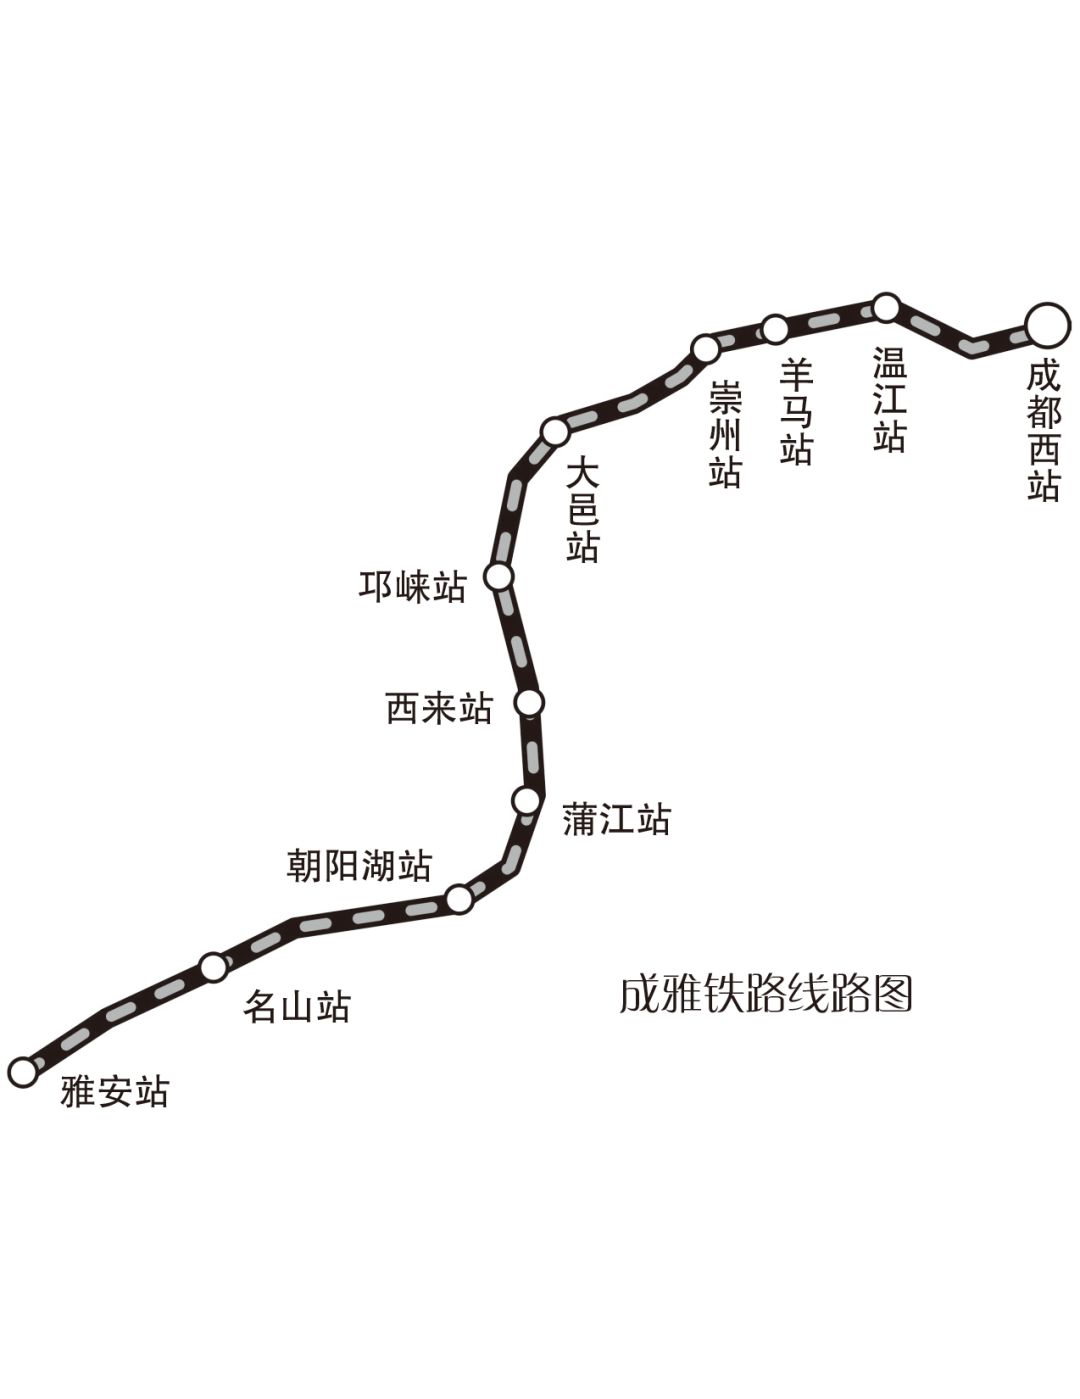 成雅铁路今日开通运营成都平原经济区8市全部迈入动车时代